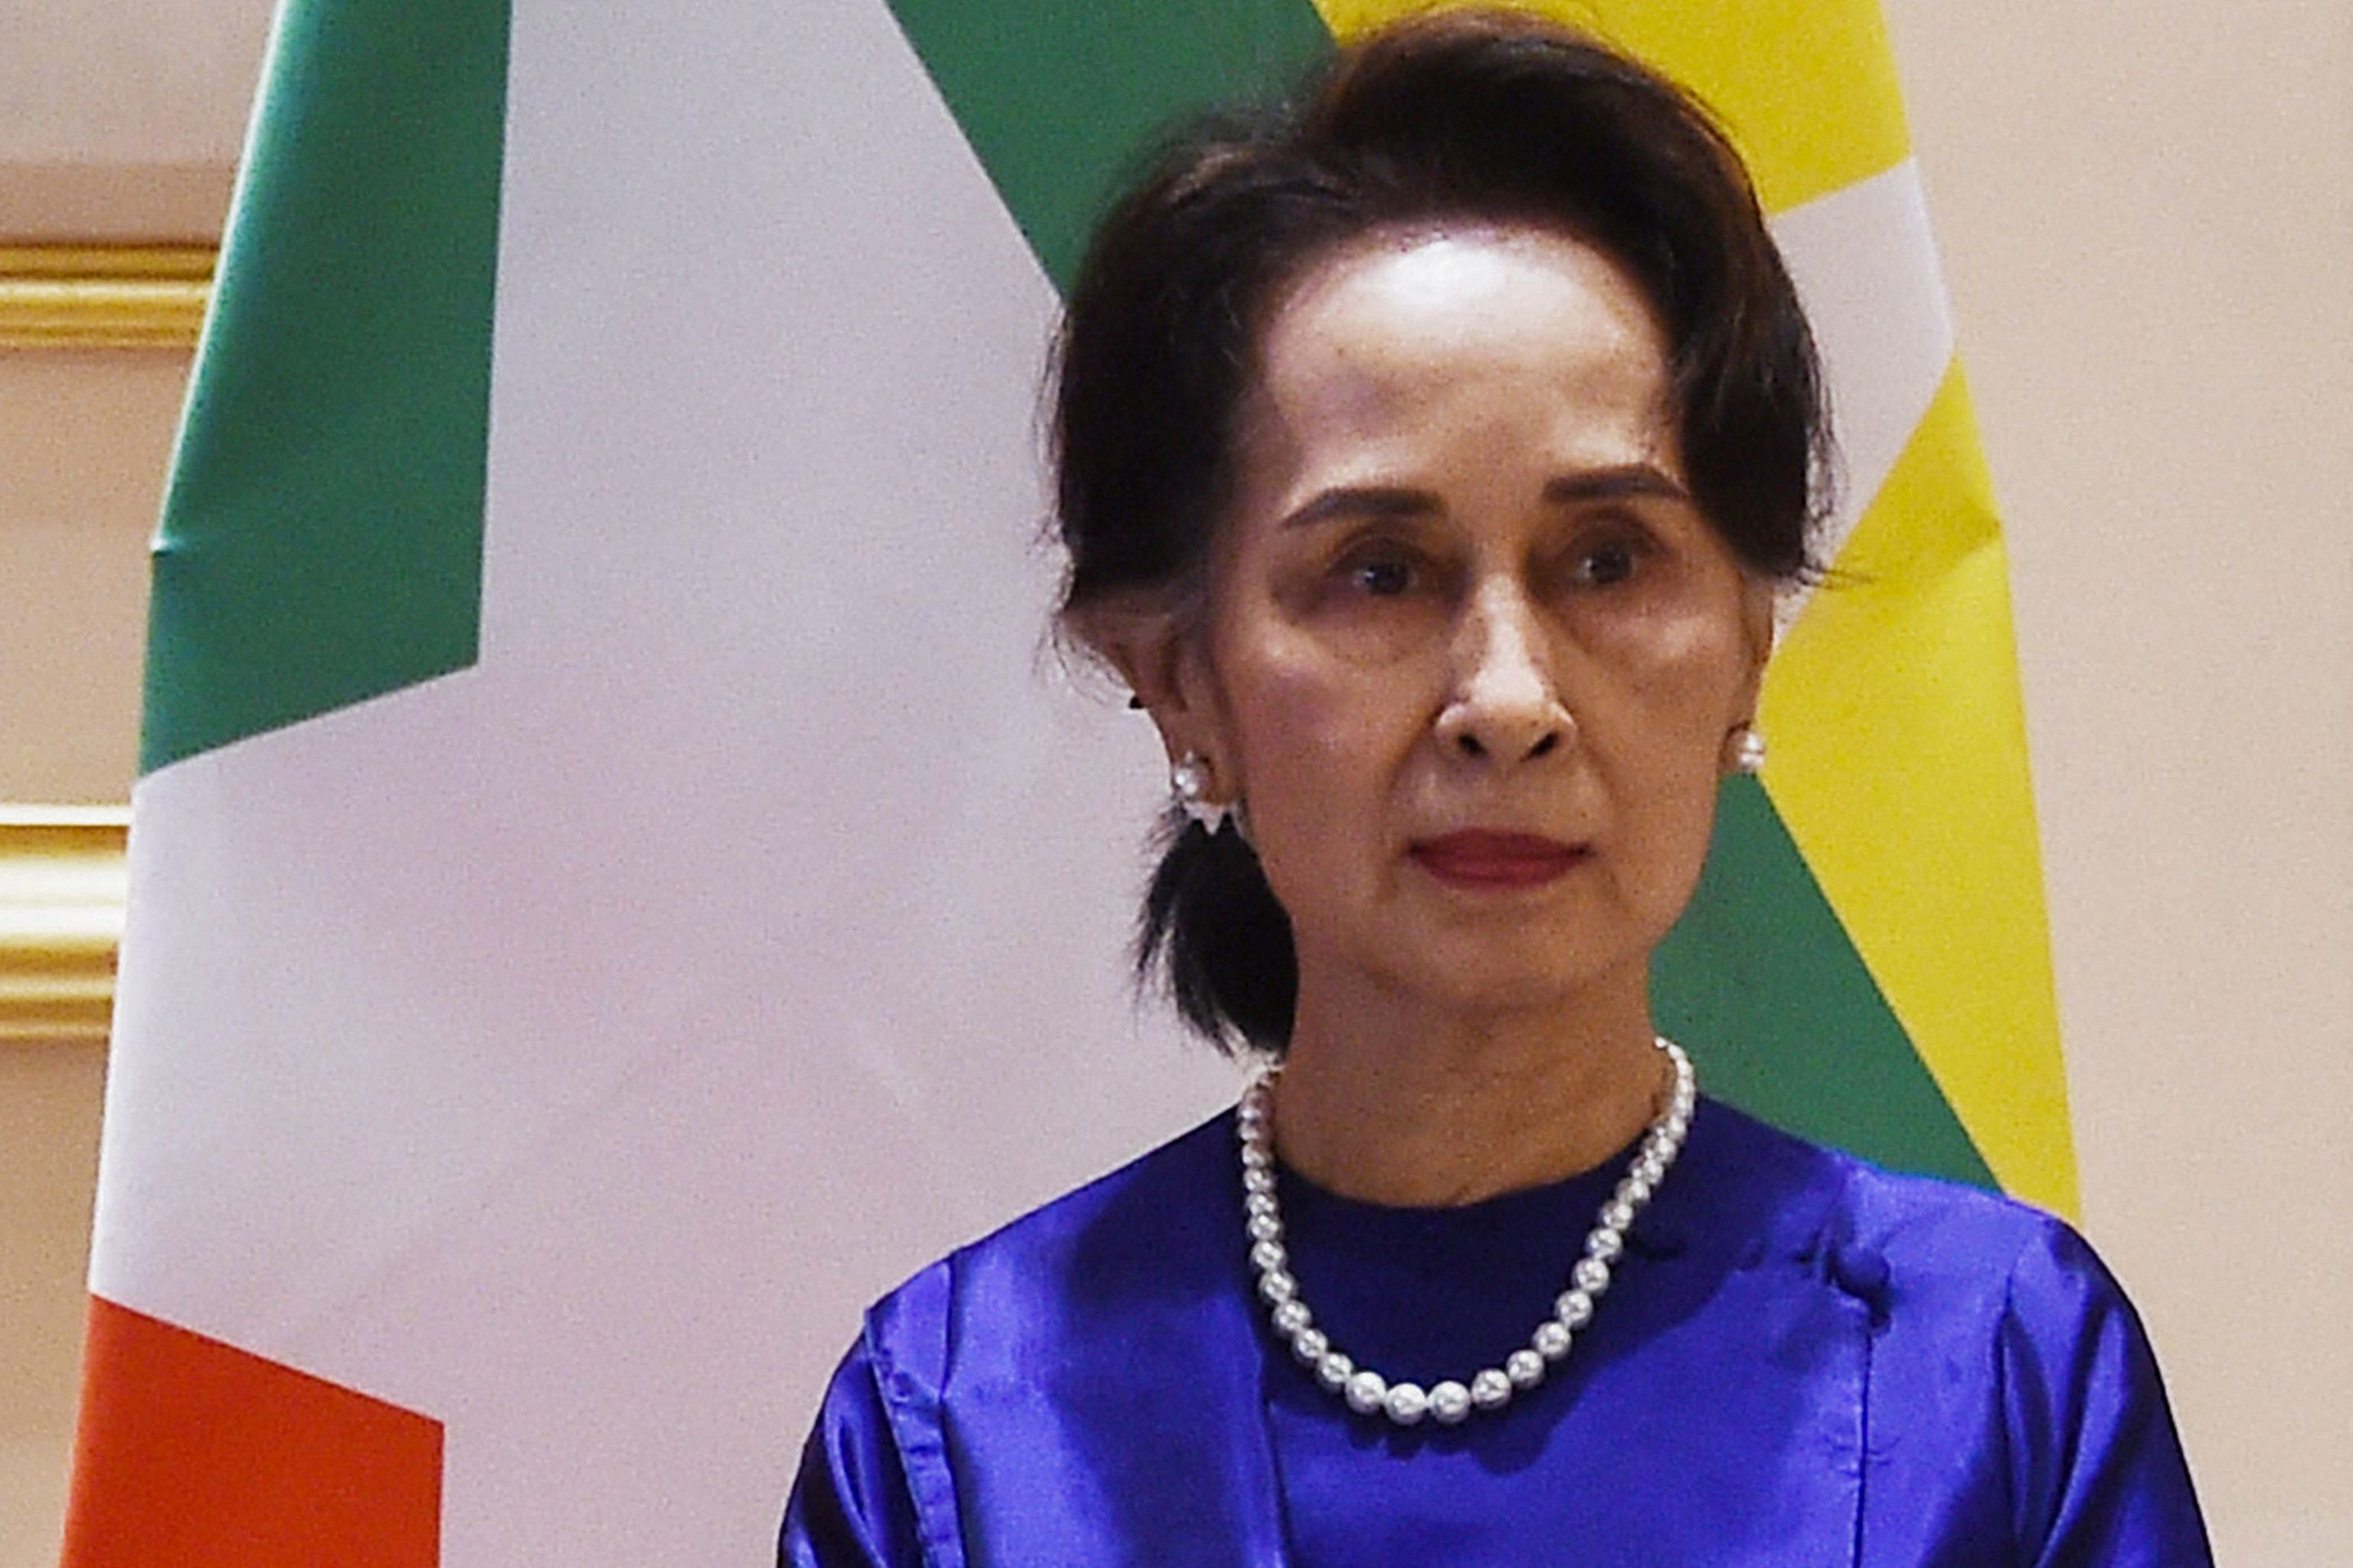 Condenan a otros seis años de cárcel a Aung San Suu Kyi y la UE exige su liberación «inmediata y sin condiciones»